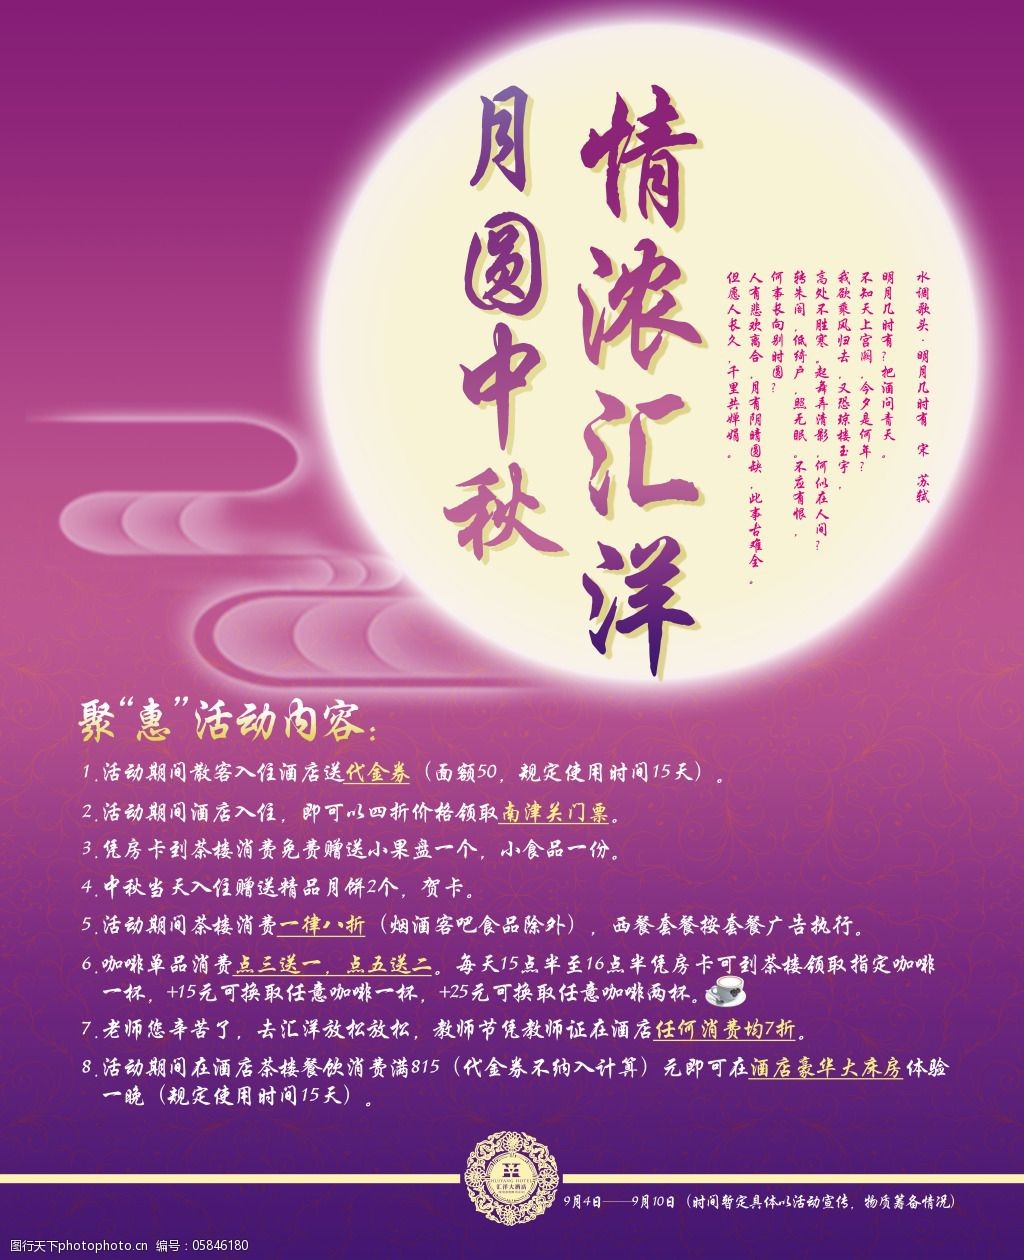 促销 活动 烟雾 月亮 中秋节 中秋快乐 紫色背景 促销海报